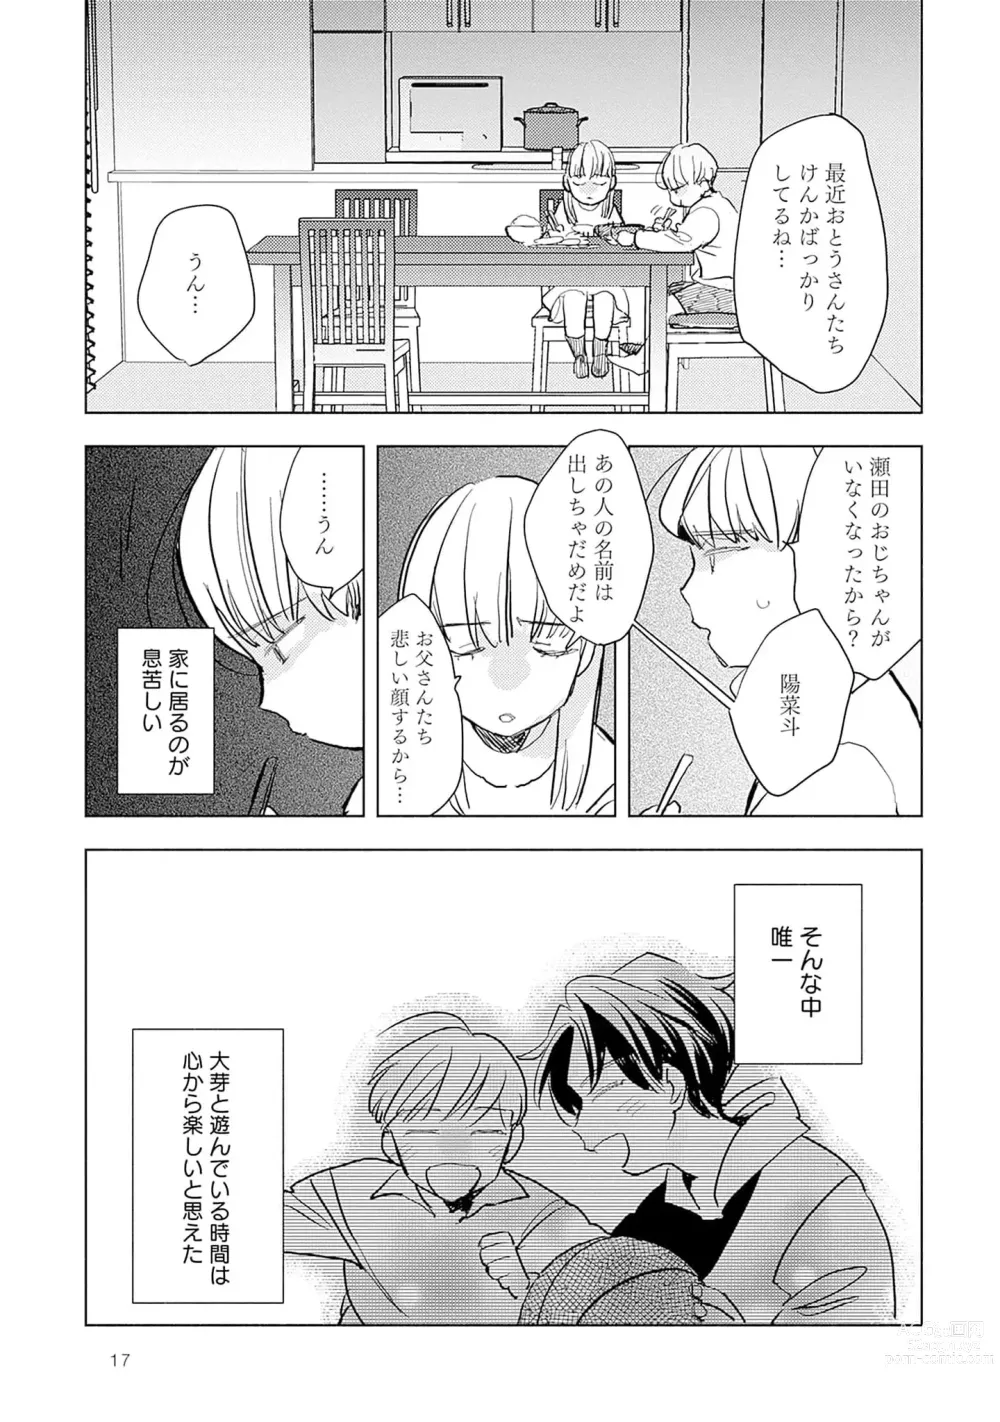 Page 19 of manga Strawberry na Days 2